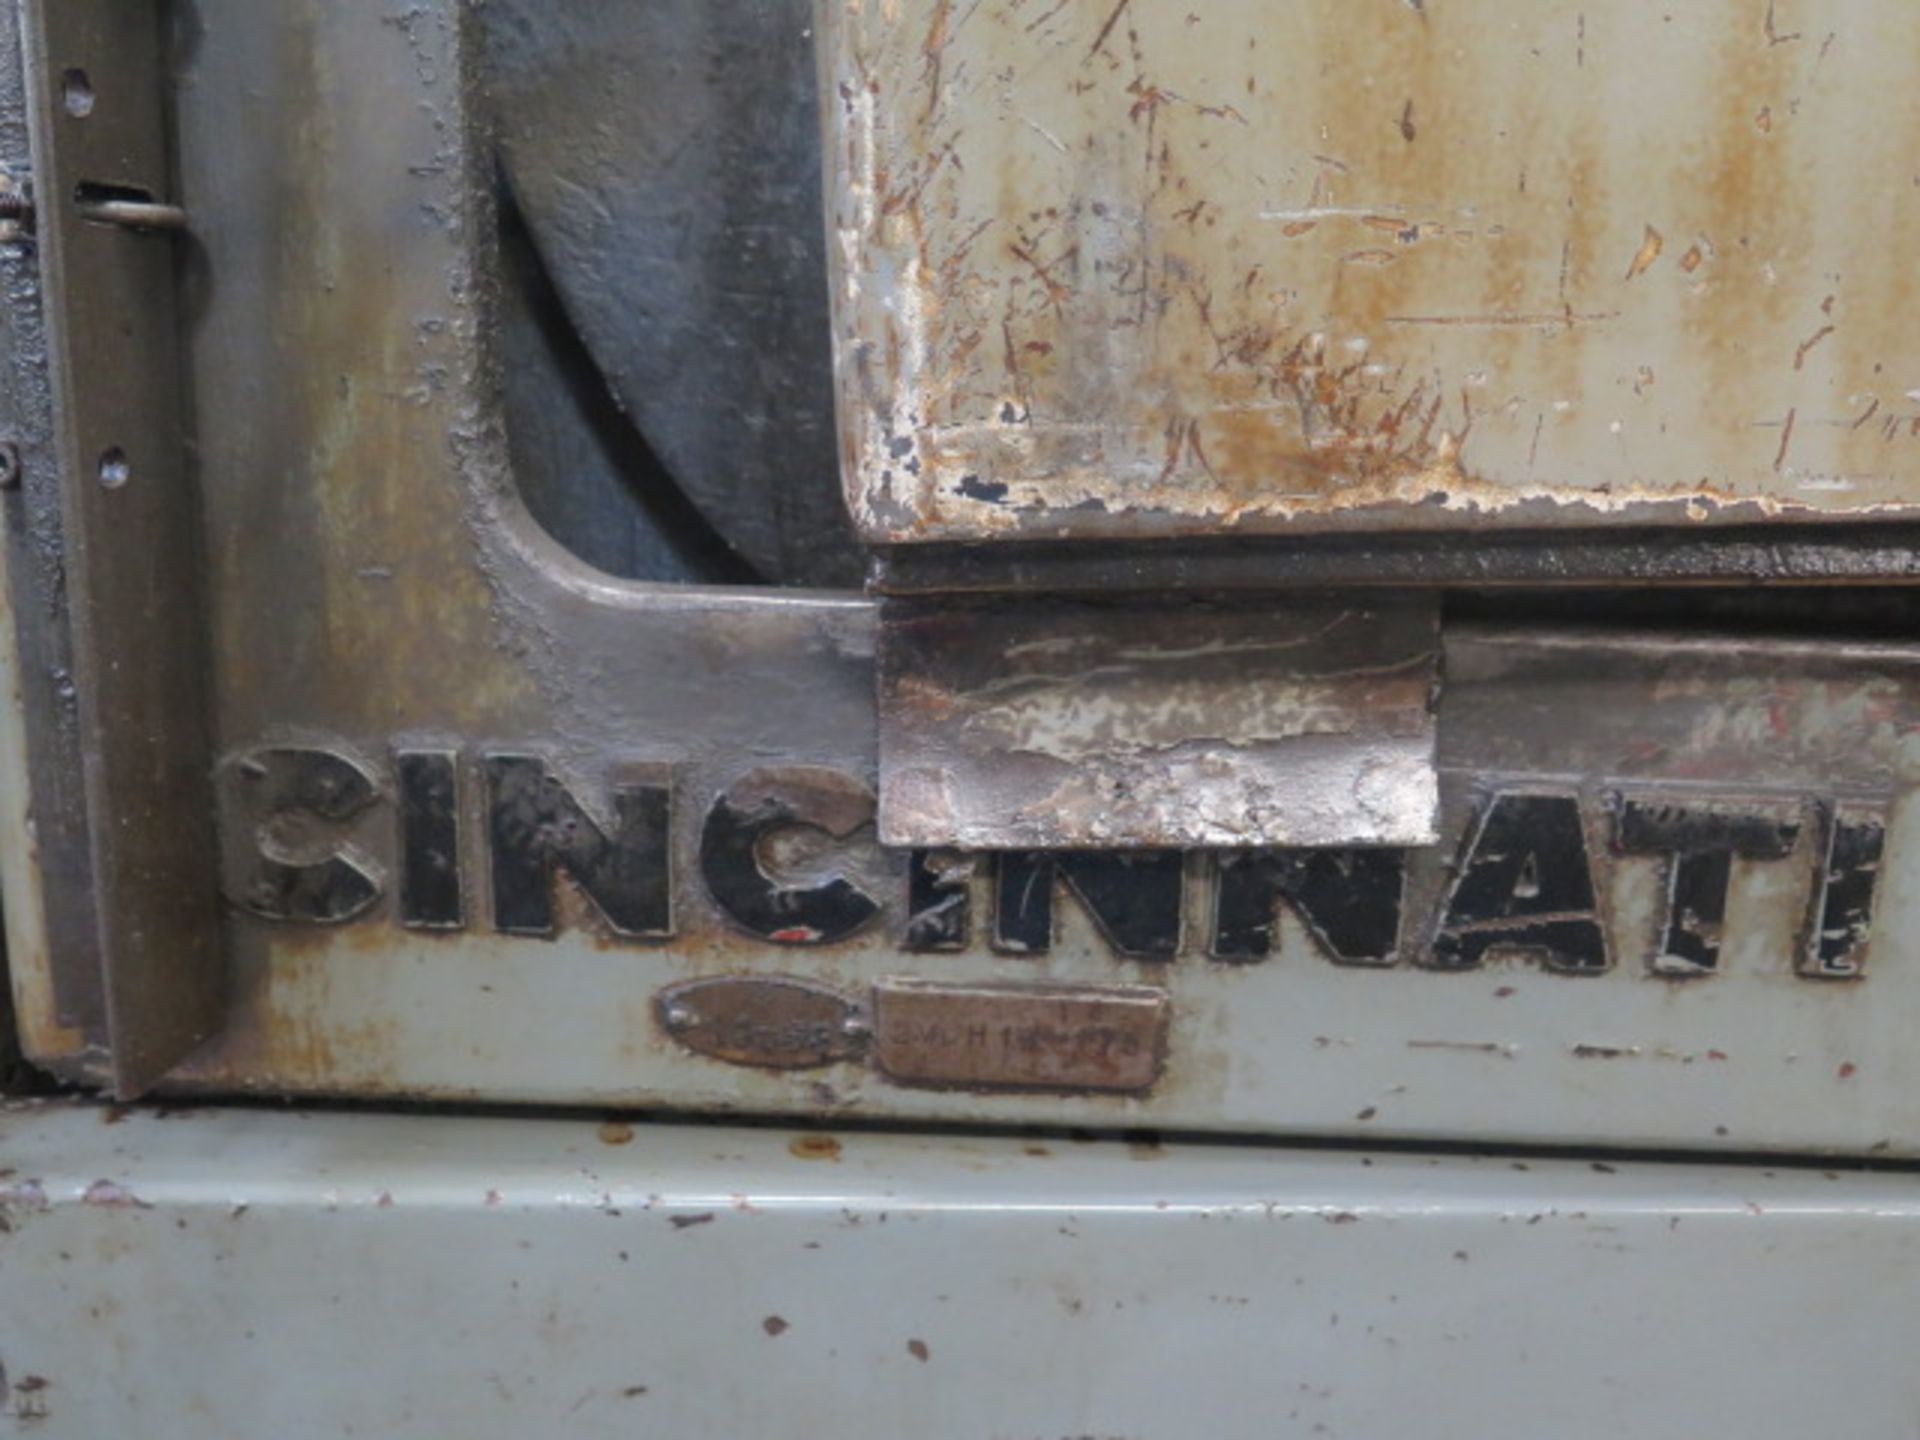 Cincinnati OM Centerless Grinder s/n 2M2H1W-175 w/ 24" Wheel Head, Cam-Out Feed Wheel, SOLD AS IS - Image 16 of 17